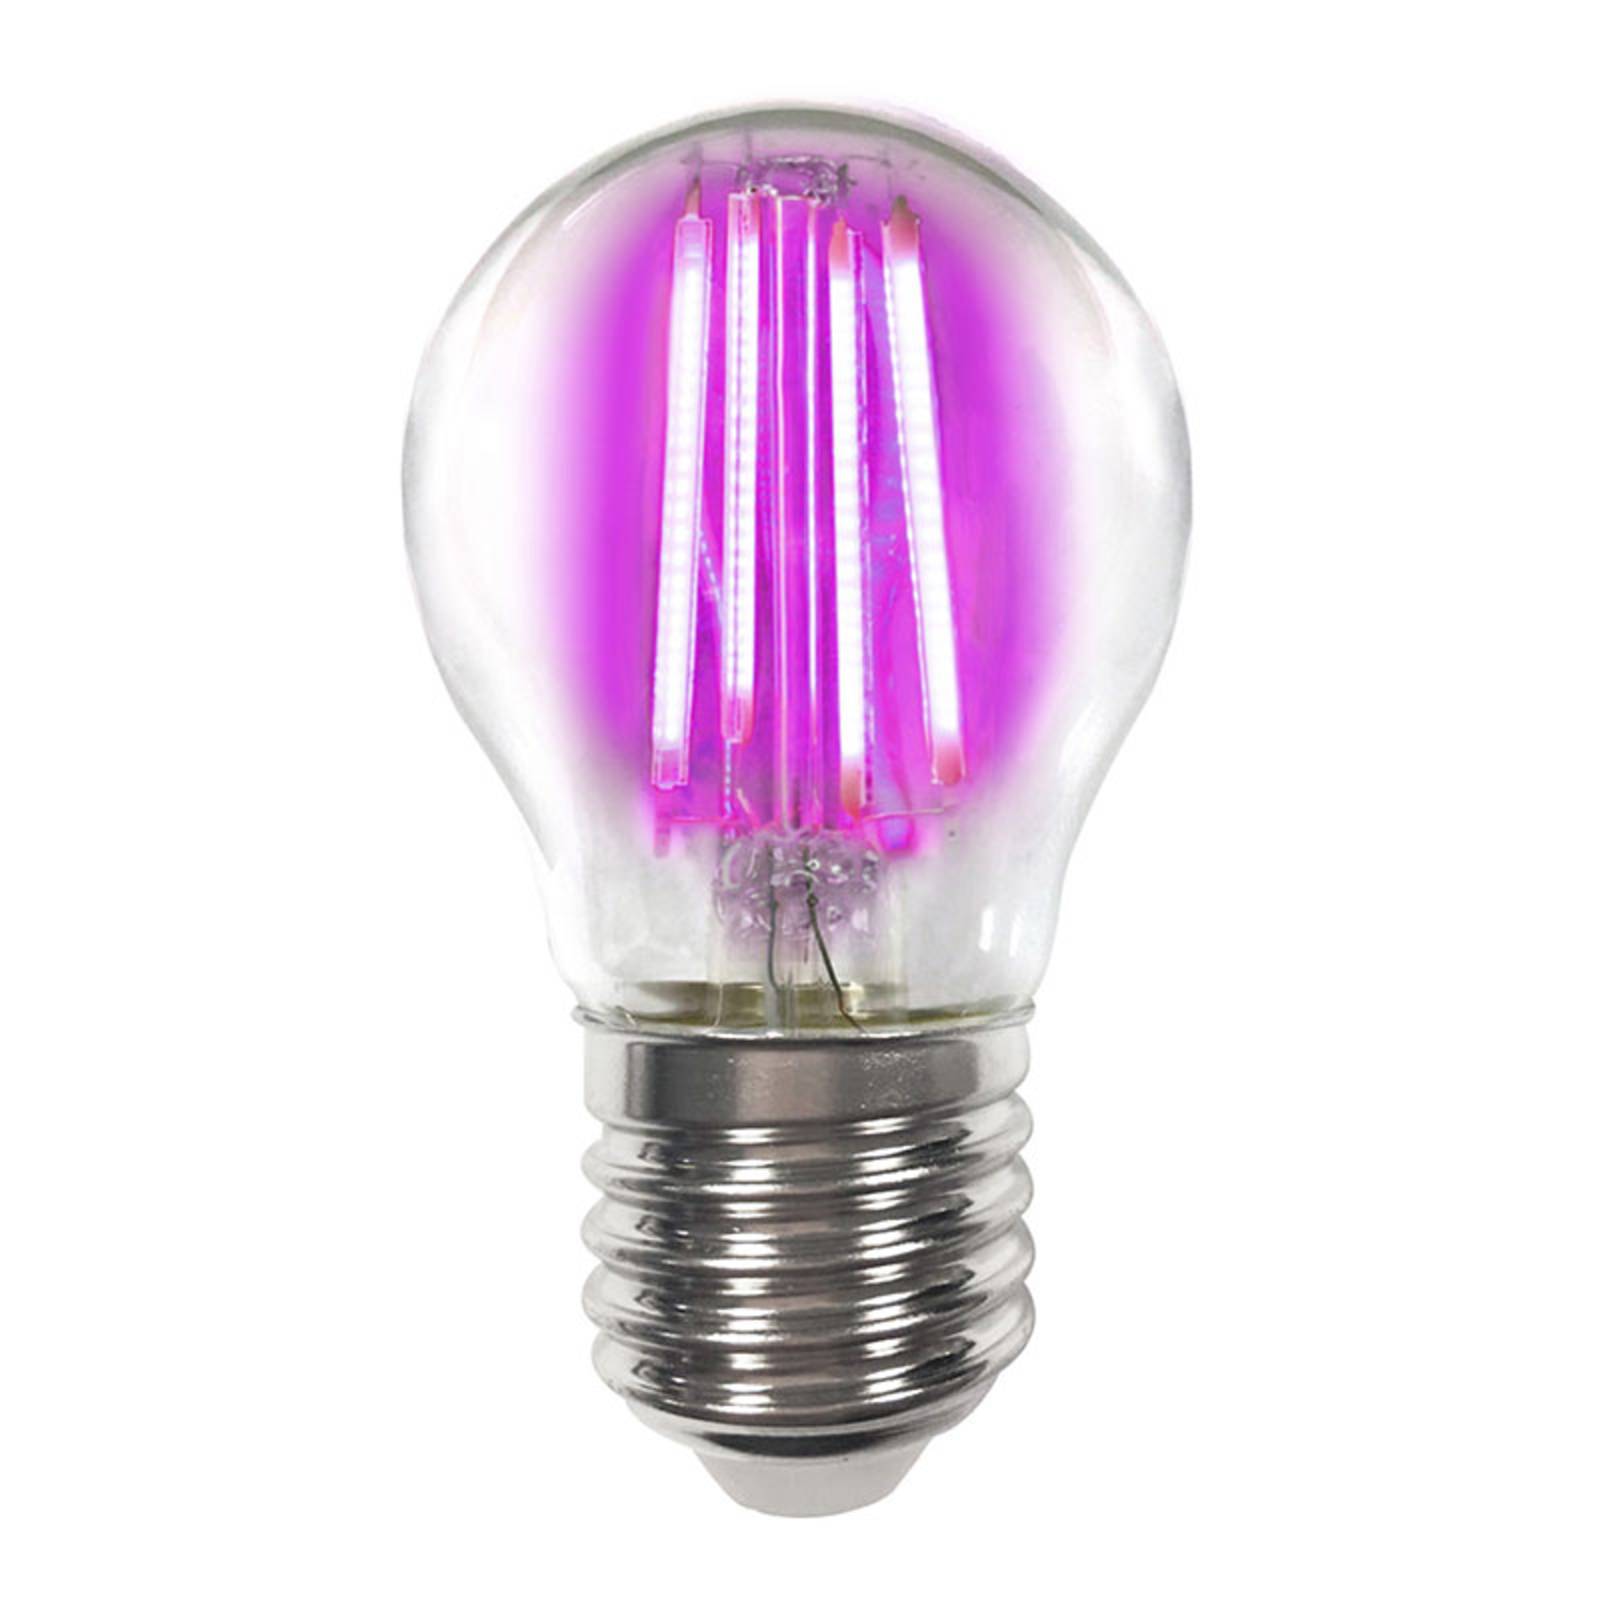 E27 4 W ampoule LED filament colorée, rose